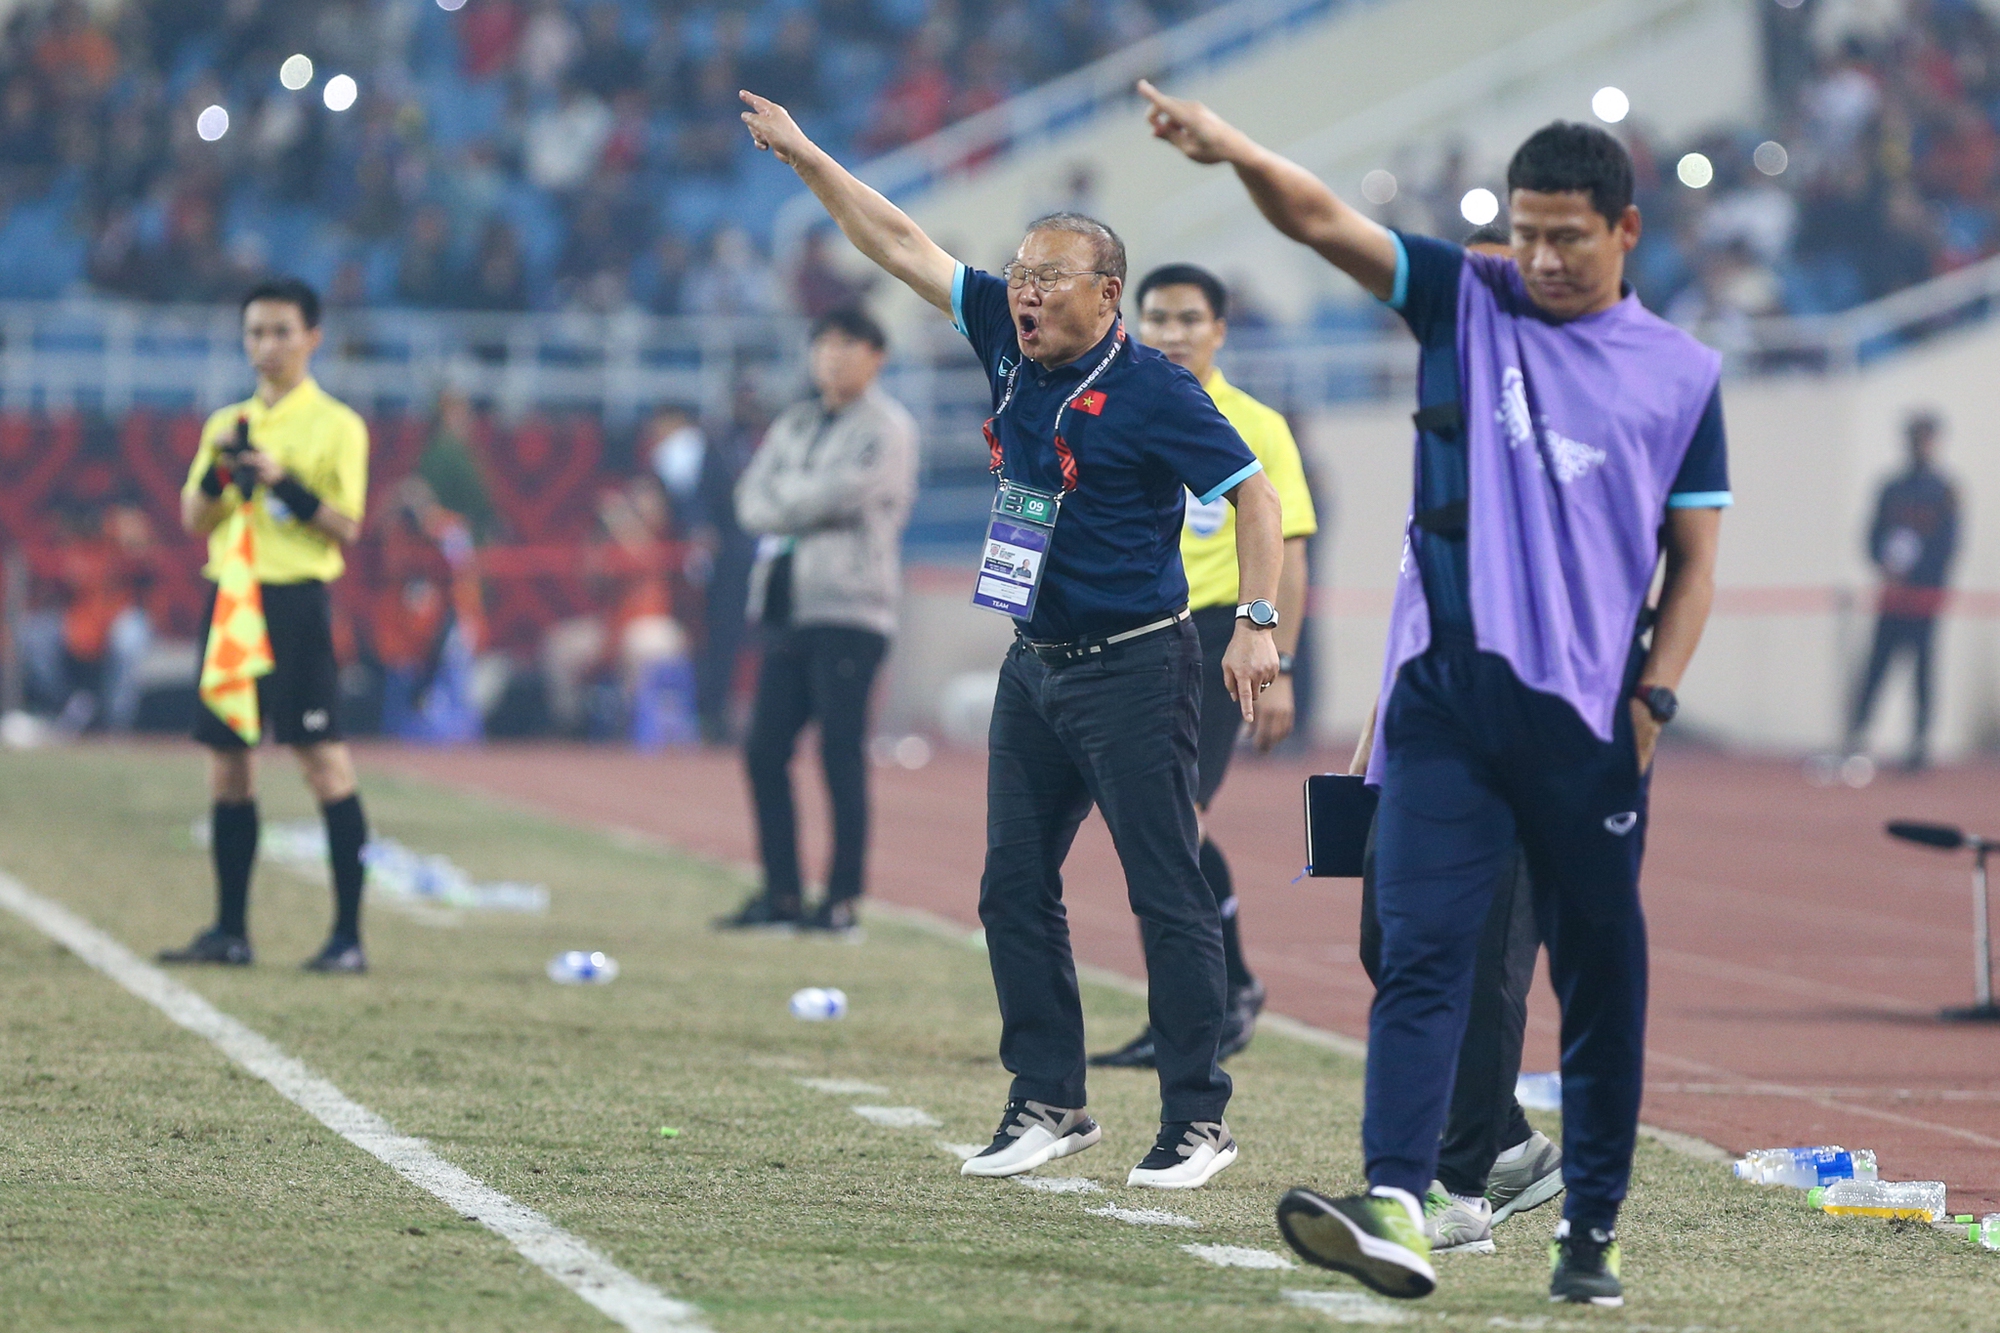 HLV Park Hang-seo vỡ oà cảm xúc với bàn thắng thứ 2 của Tiến Linh trước Indonesia - Ảnh 11.